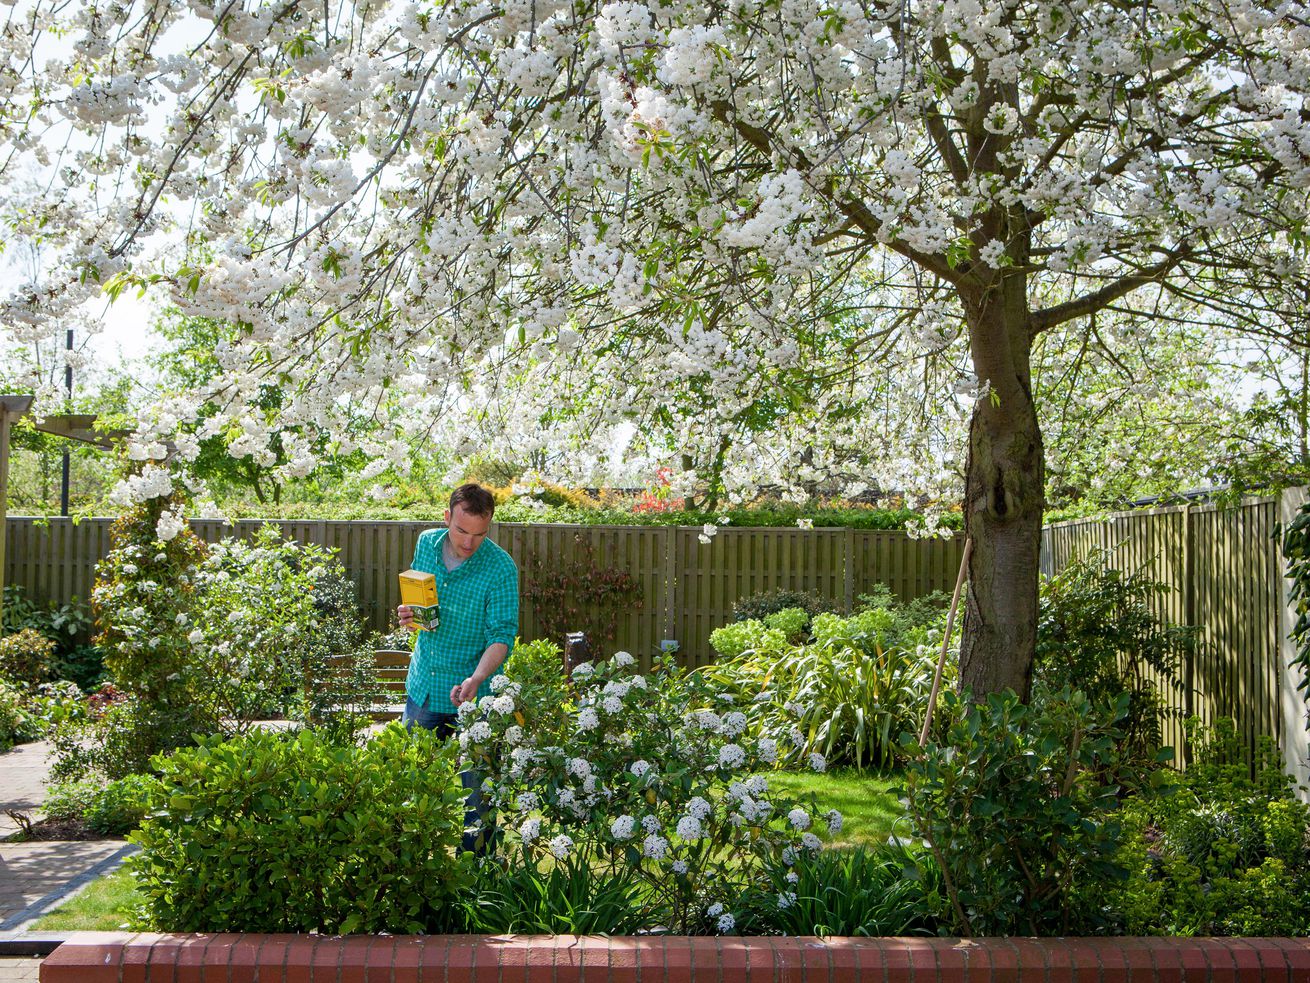 A man fertilizing bushes in a garden